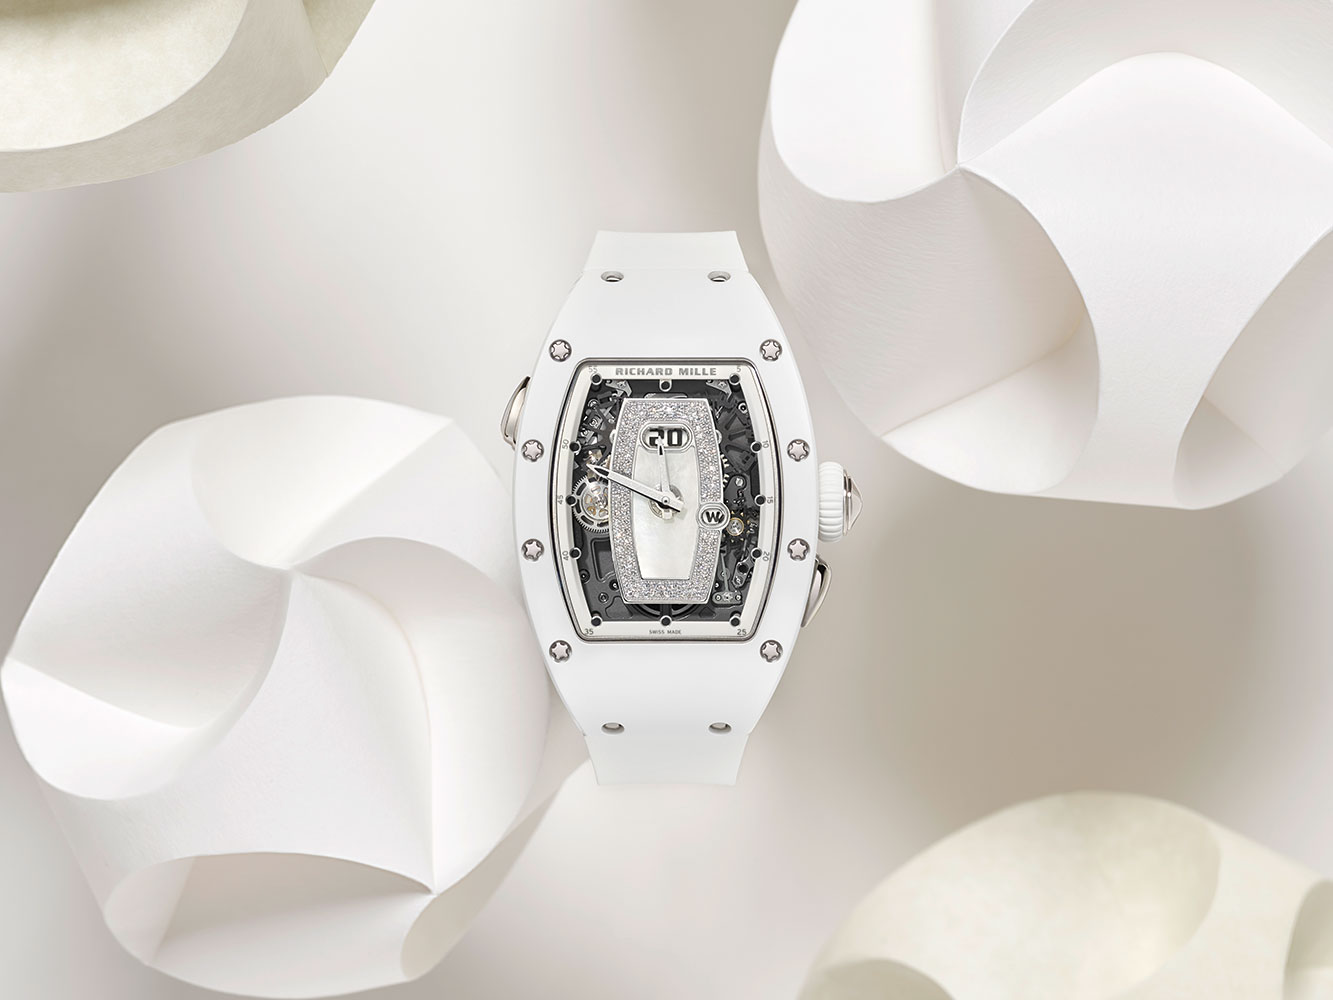 Giới thiệu đồng hồ Richard Mille RM 037 White Ceramic Automatic dành cho phái đẹp